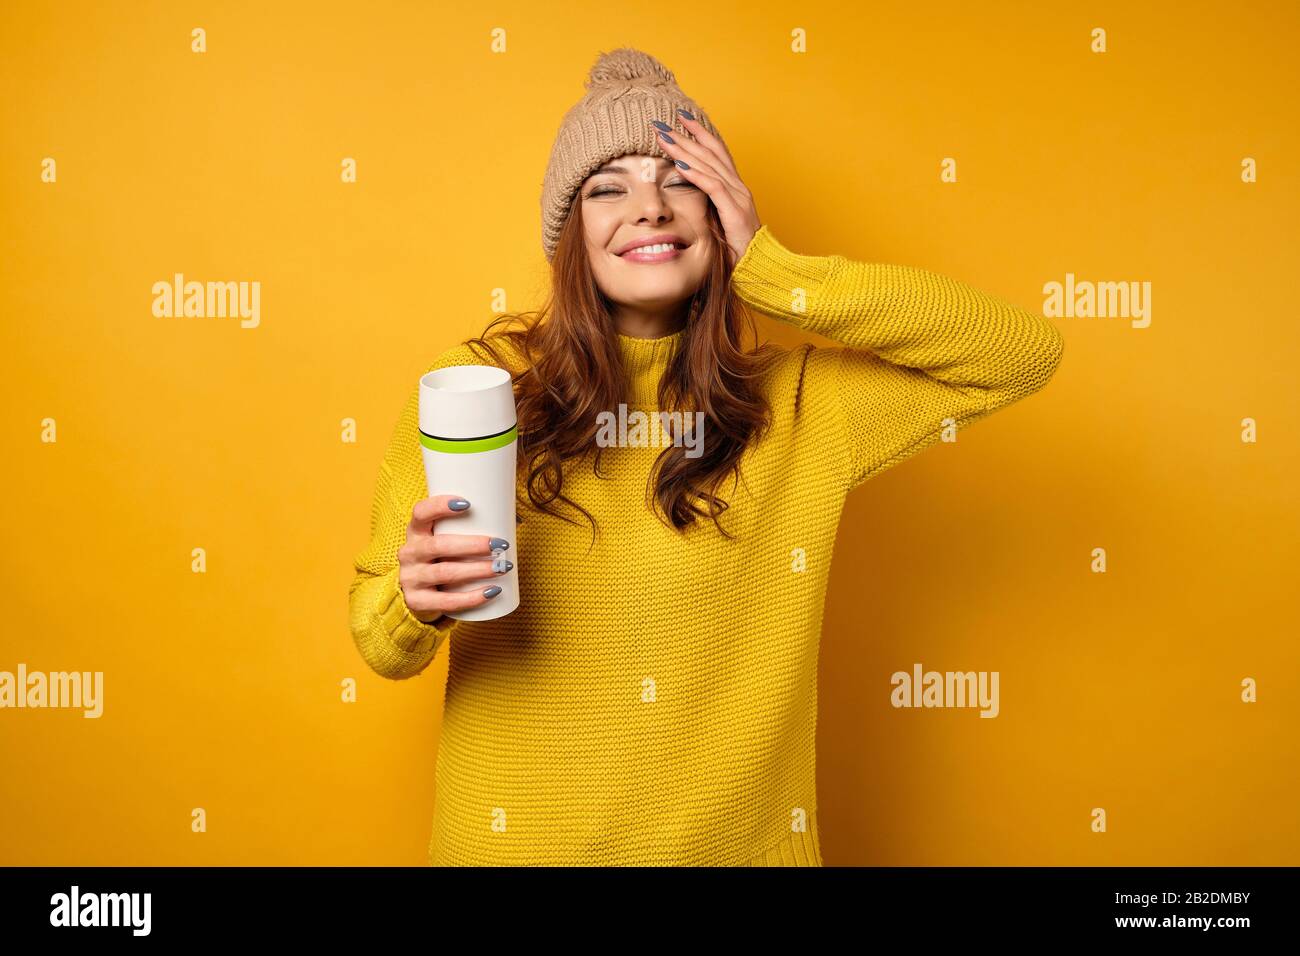 Una bruna in un maglione giallo e cappello è in piedi su uno sfondo giallo, sorridente grazioso con una thermocolate nelle sue mani. Foto Stock